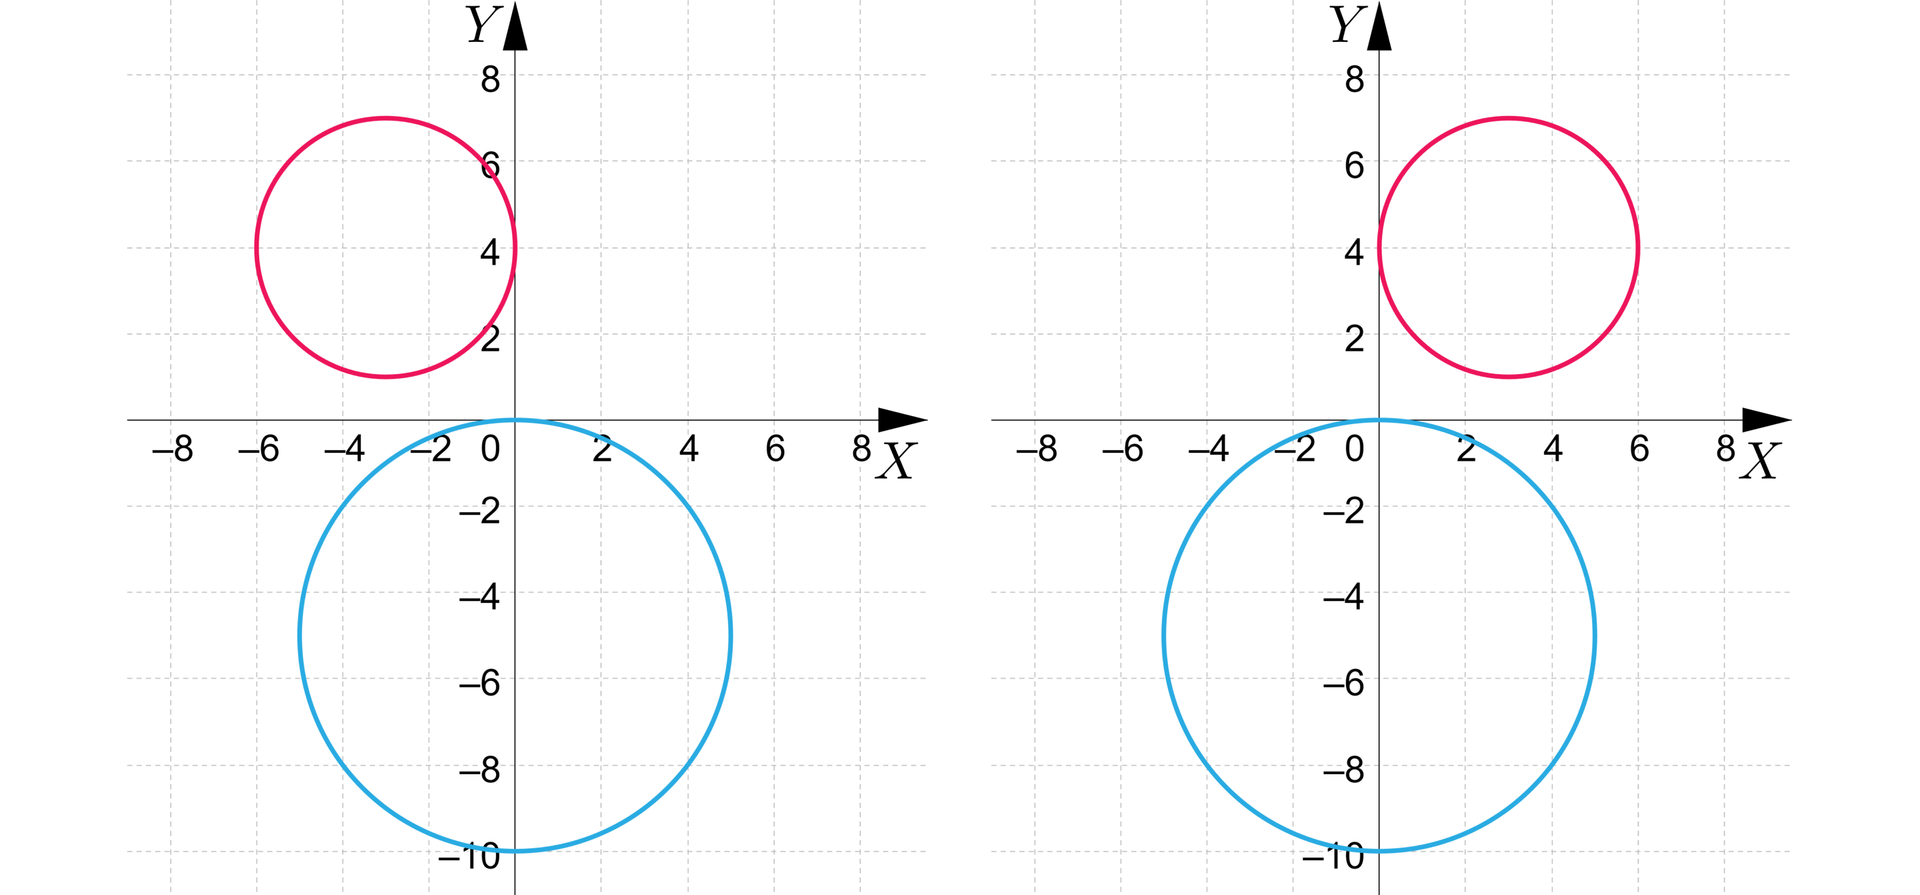 Grafika przedstawia dwa układy współrzędnych z poziomą osią x od minus ośmiu do ośmiu i pionową osią y od minus dziesięciu do ośmiu. Osie mają podziałkę co dwa. Na pierwszej płaszczyźnie znajdują się dwa okręgi. Pierwszy ma środek w punkcie początek nawiasu, 0, minus 5, zamknięcie nawiasu oraz promień długości pięć. Drugi z nich ma środek w punkcie początek nawiasu, minus 3, 4, zamknięcie nawiasu, długość jego promienia wynosi trzy. Okręgi nie mają punktów wspólnych. Na drugiej płaszczyźnie znajdują się dwa okręgi. Pierwszy ma środek w punkcie początek nawiasu, 0, minus 5, zamknięcie nawiasu oraz promień długości pięć. Drugi z nich ma środek w punkcie początek nawiasu, 3, 4, zamknięcie nawiasu, długość jego promienia wynosi trzy. Okręgi nie mają punktów wspólnych.